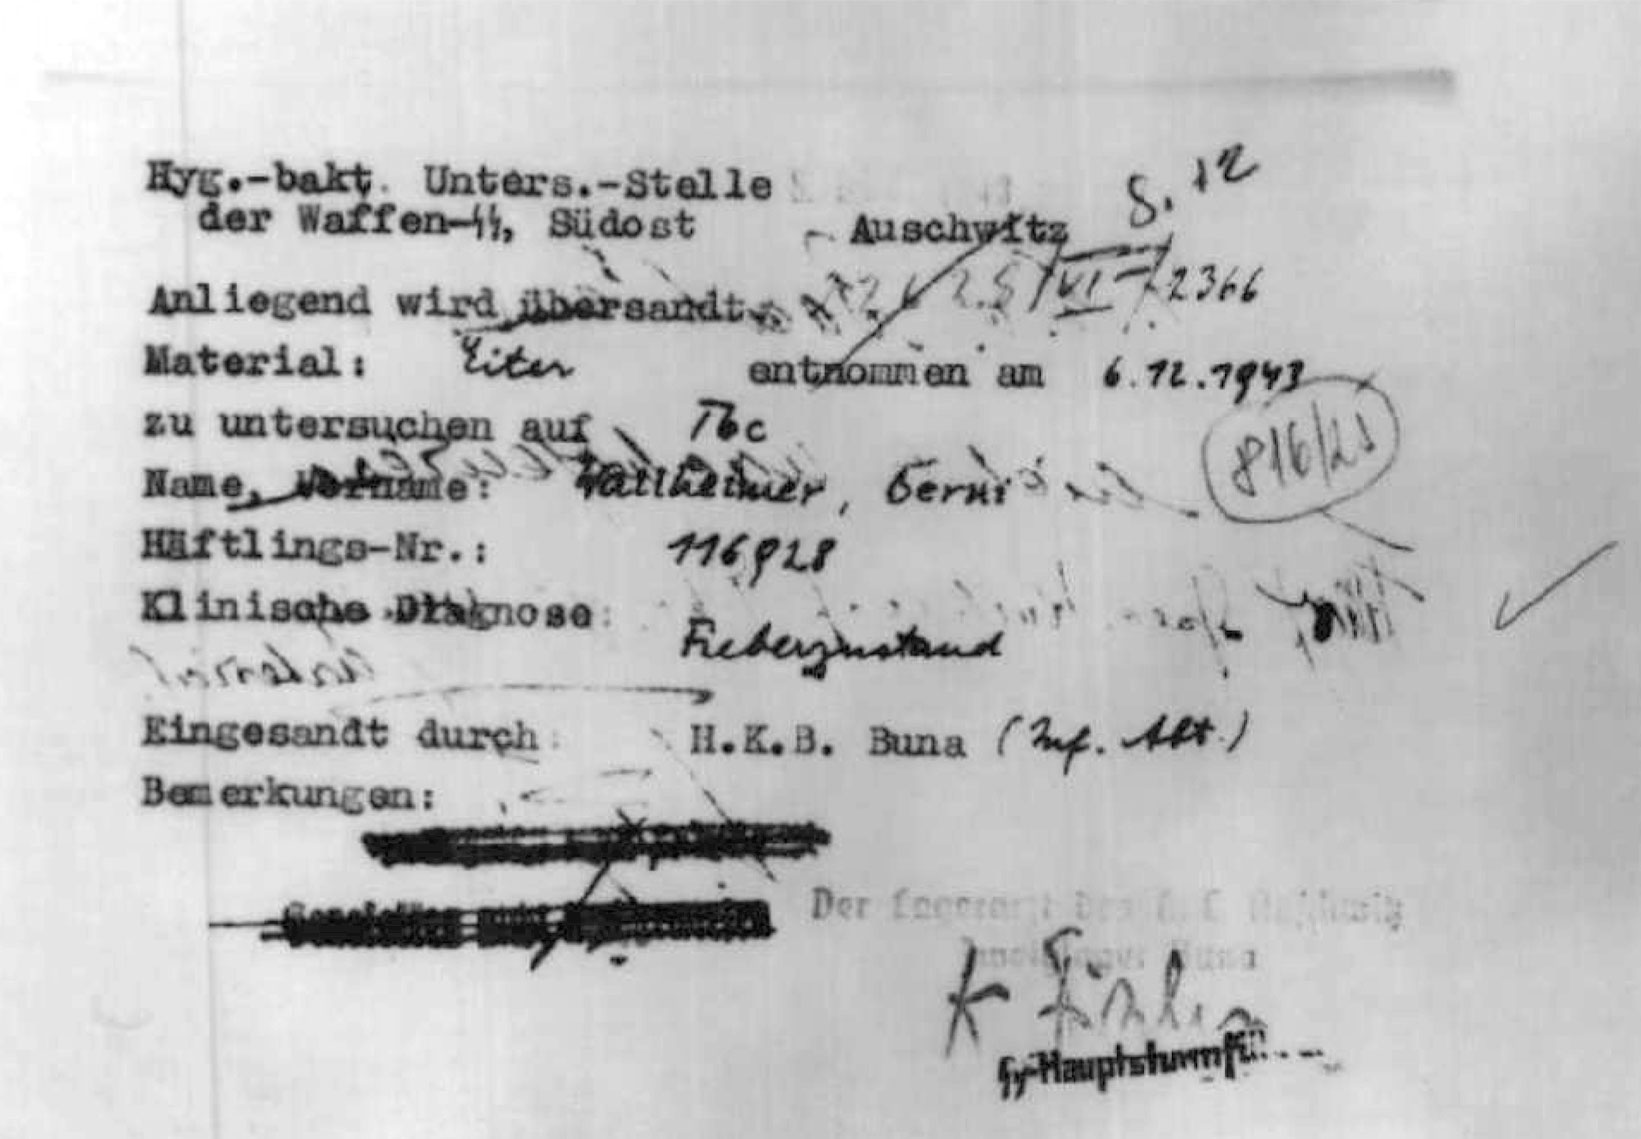 Das SS-Hygiene-Institut in Auschwitz untersuchte das Blut von Berni Wallheimer und stellte „keine Malaria“ fest